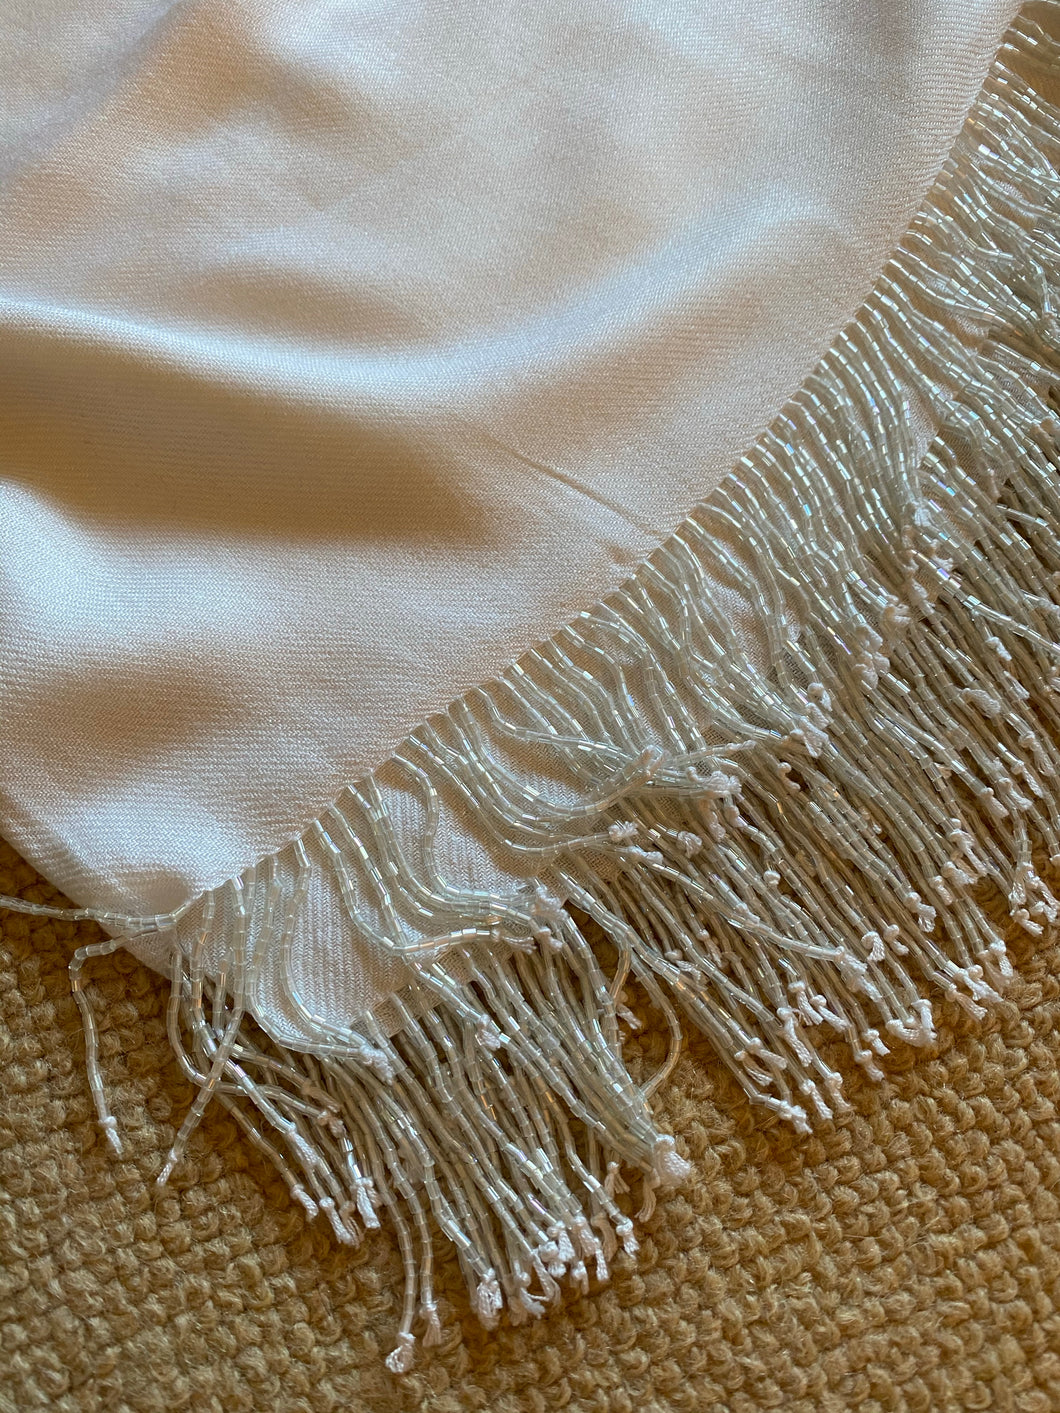 WI121 Plain white, long scarf with beaded fringe